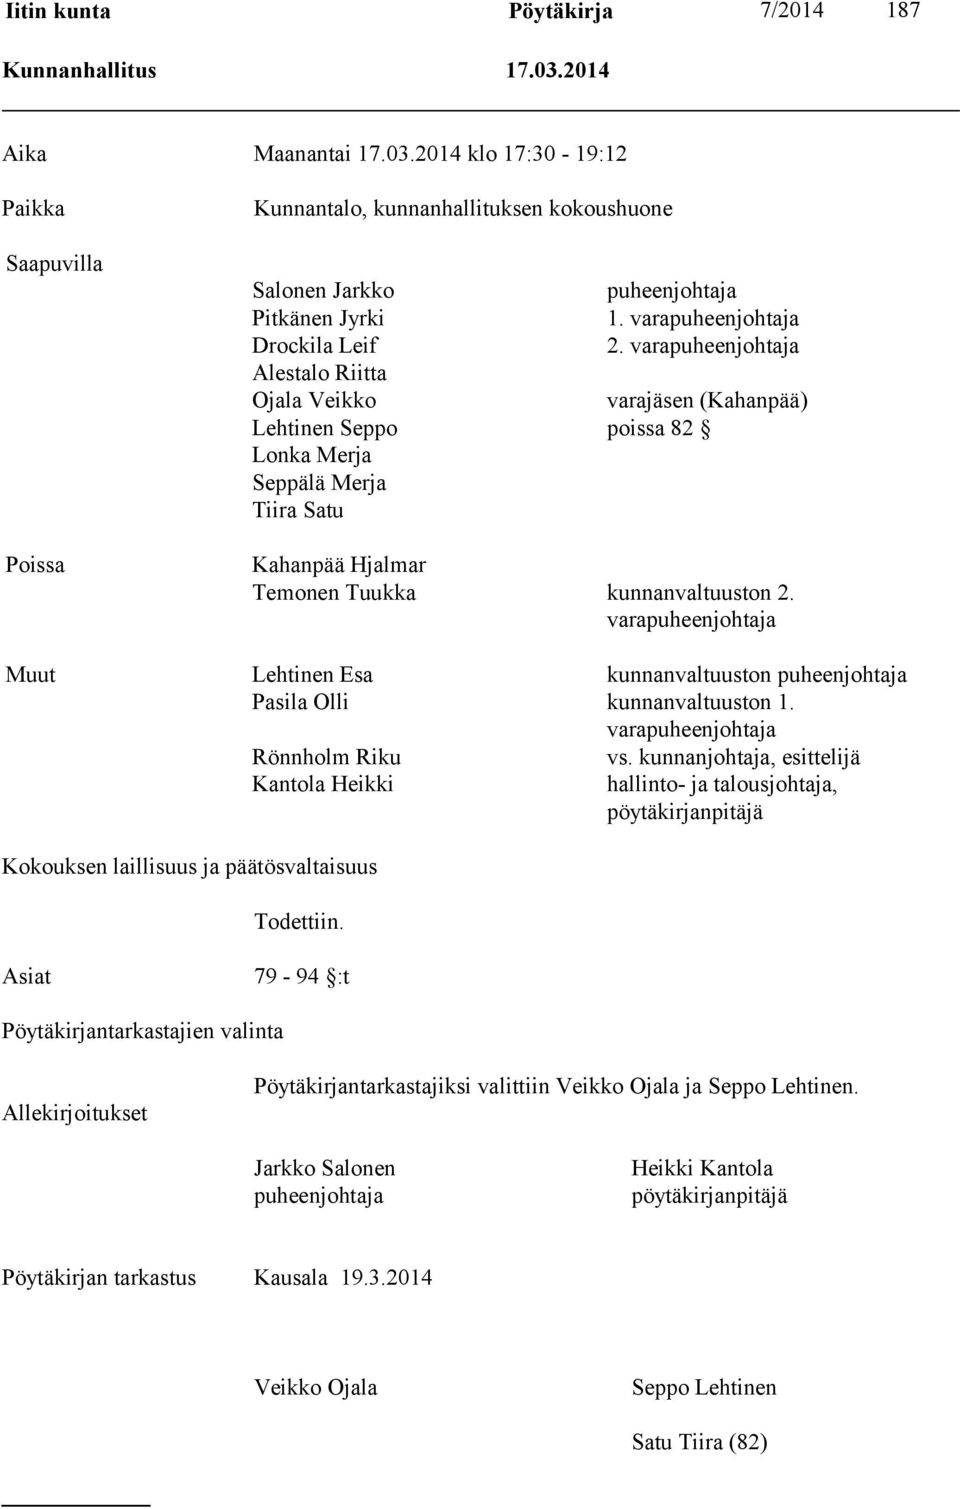 varapuheenjohtaja Alestalo Riitta Ojala Veikko varajäsen (Kahanpää) Lehtinen Seppo poissa 82 Lonka Merja Seppälä Merja Tiira Satu Kahanpää Hjalmar Temonen Tuukka kunnanvaltuuston 2.